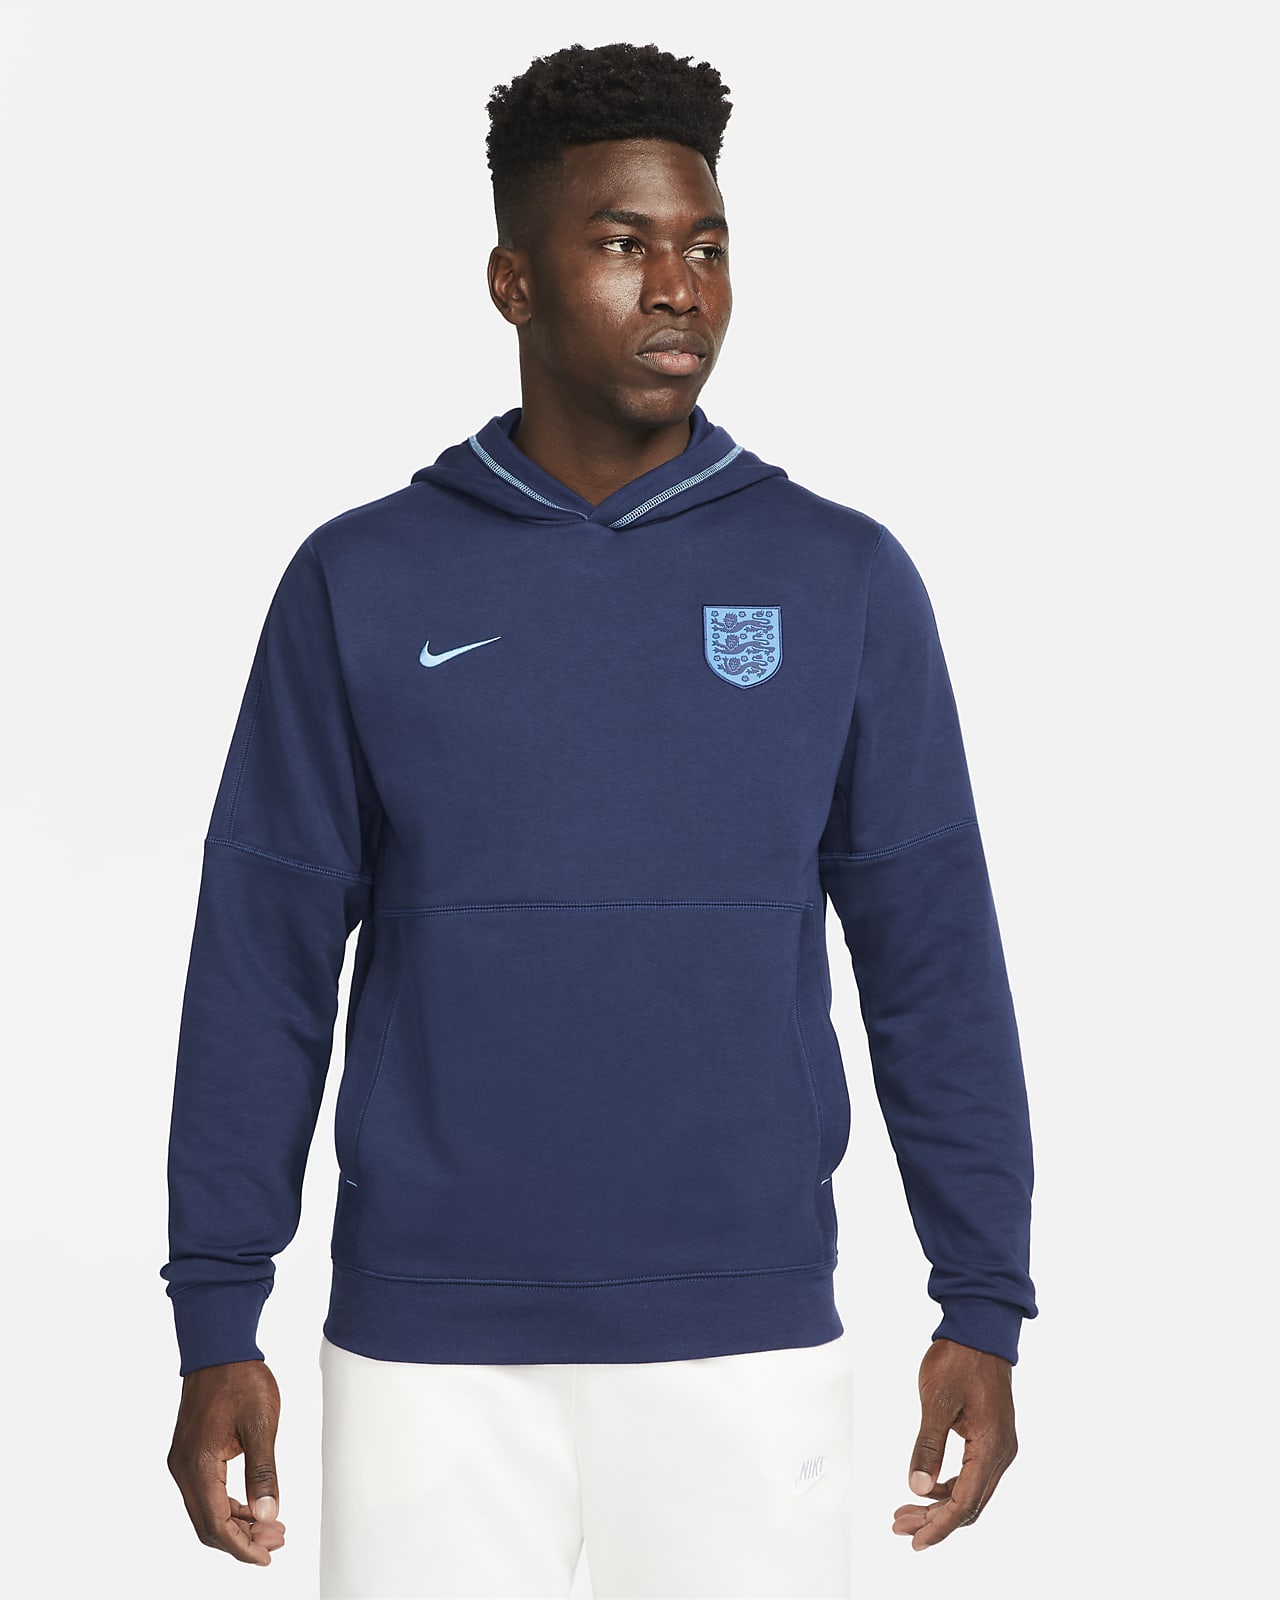 Obligatorio intimidad Interesar Inglaterra Sudadera con capucha de fútbol de tejido French terry - Hombre.  Nike ES